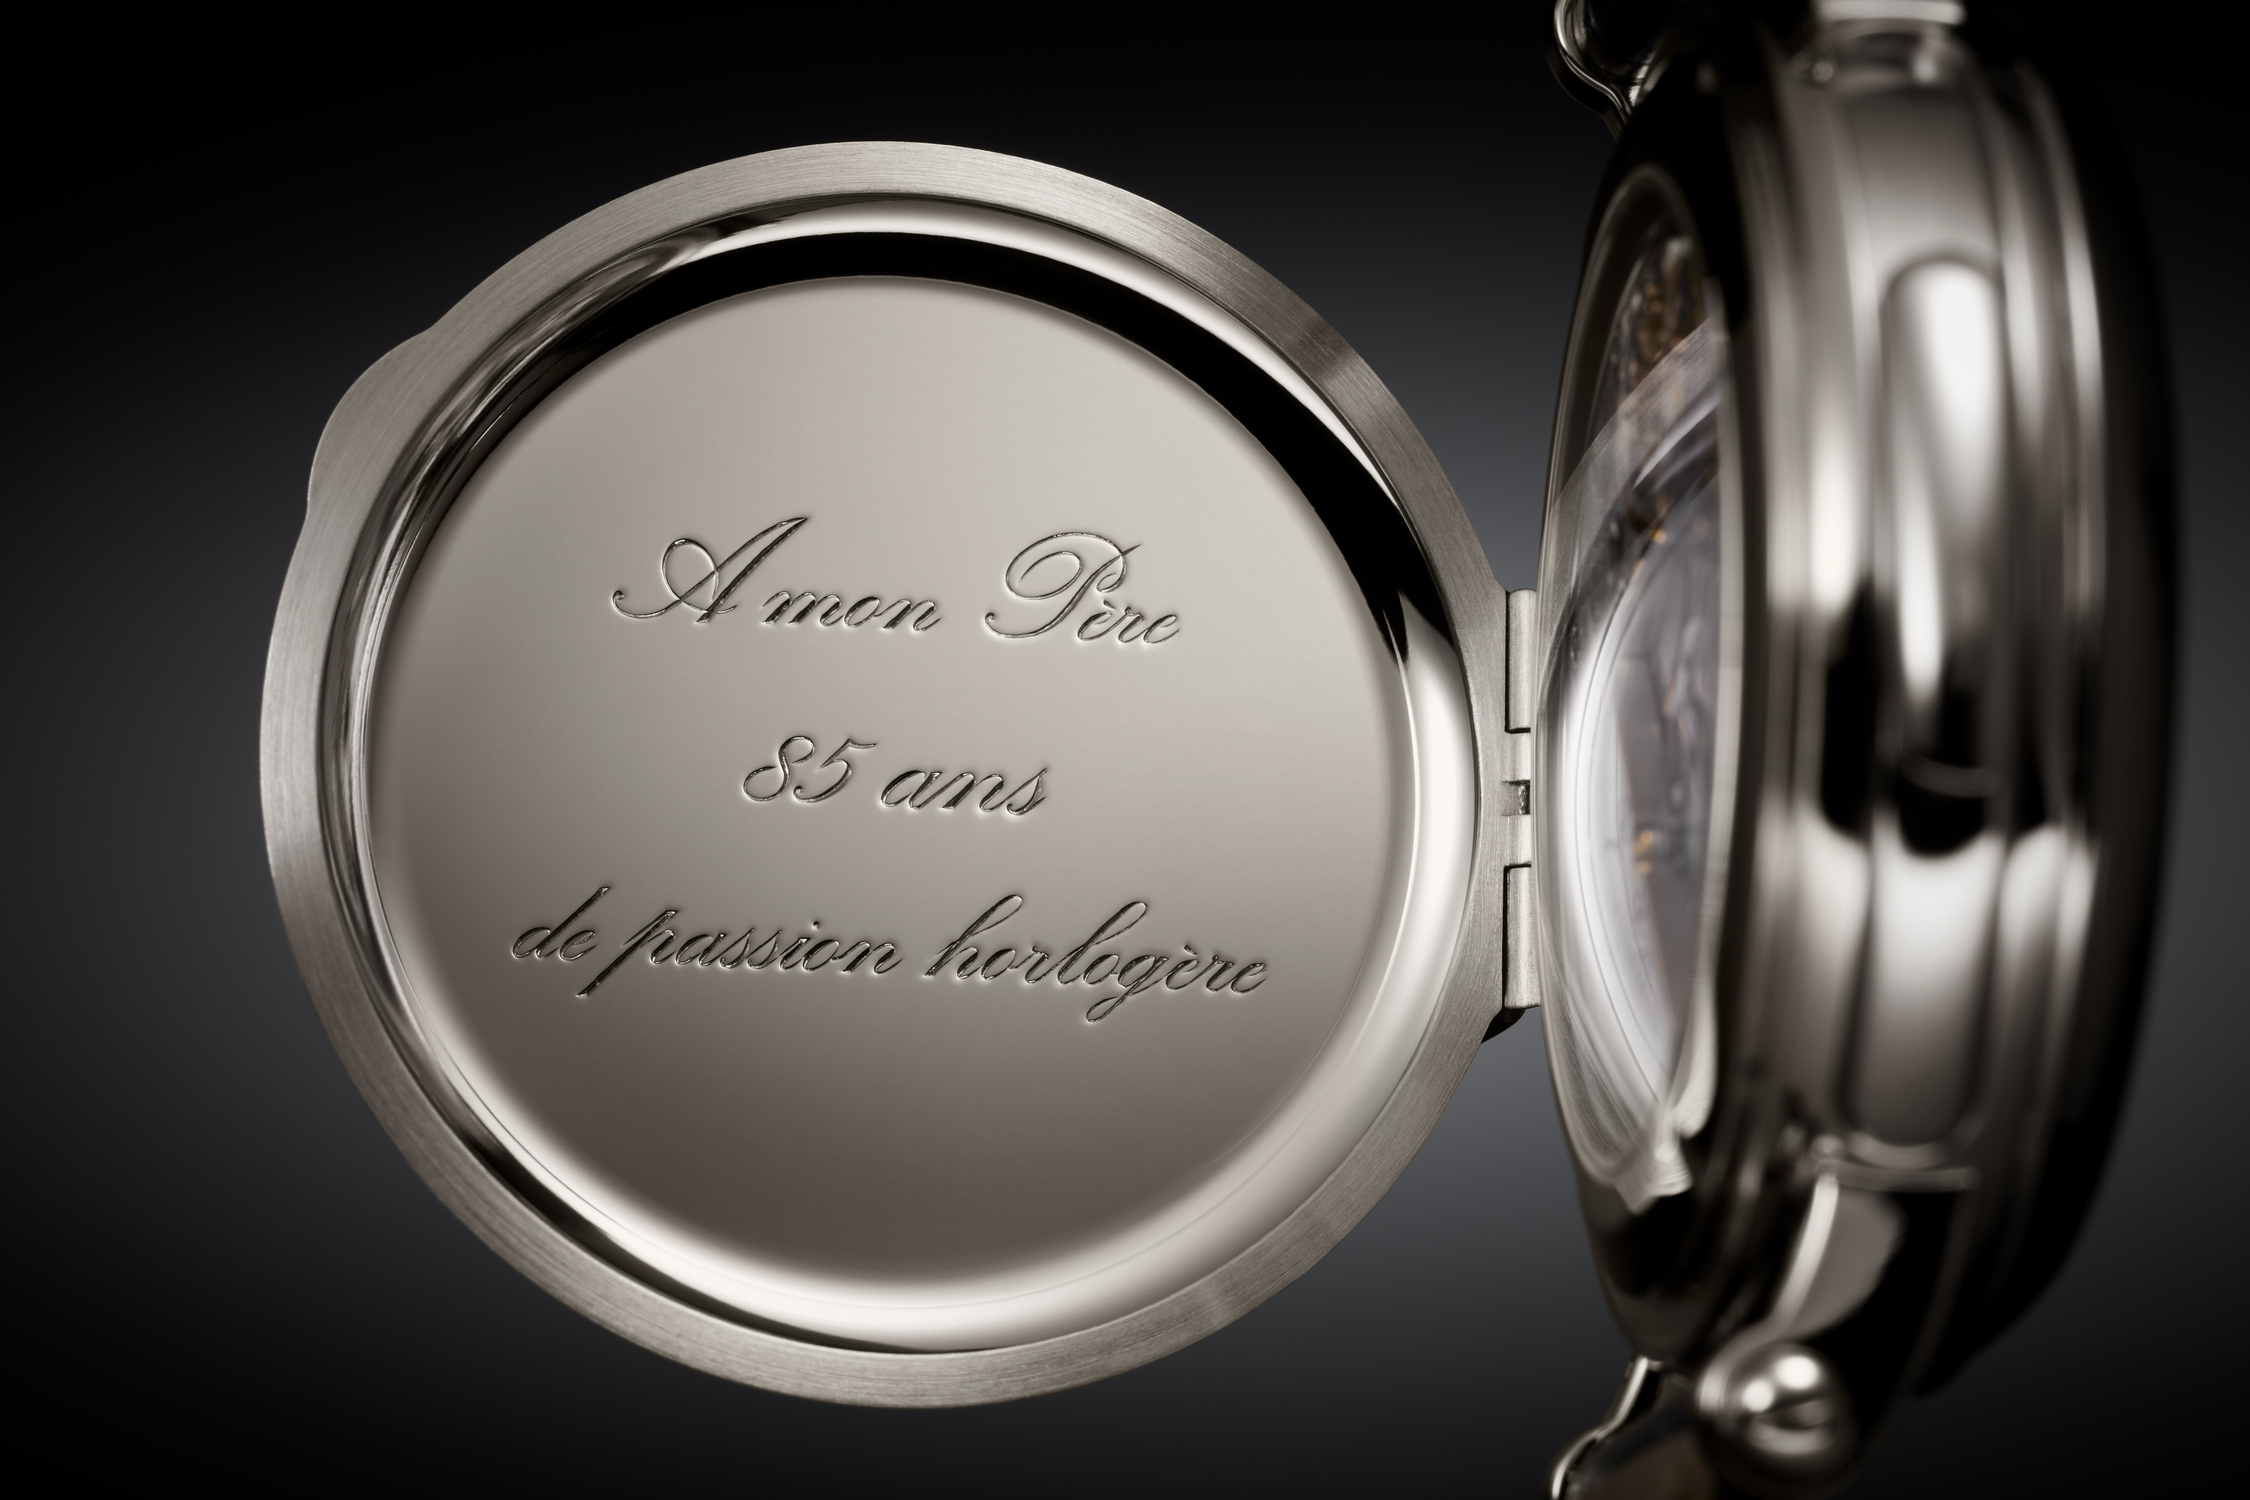 從藍寶石水晶玻璃後底蓋上可見 Philippe Stern 的簽名，後方鉸鏈防塵蓋鐫刻「A mon père, 85 ans de passion horlogère 」（獻給父親，八十五載製錶熱忱）字樣。